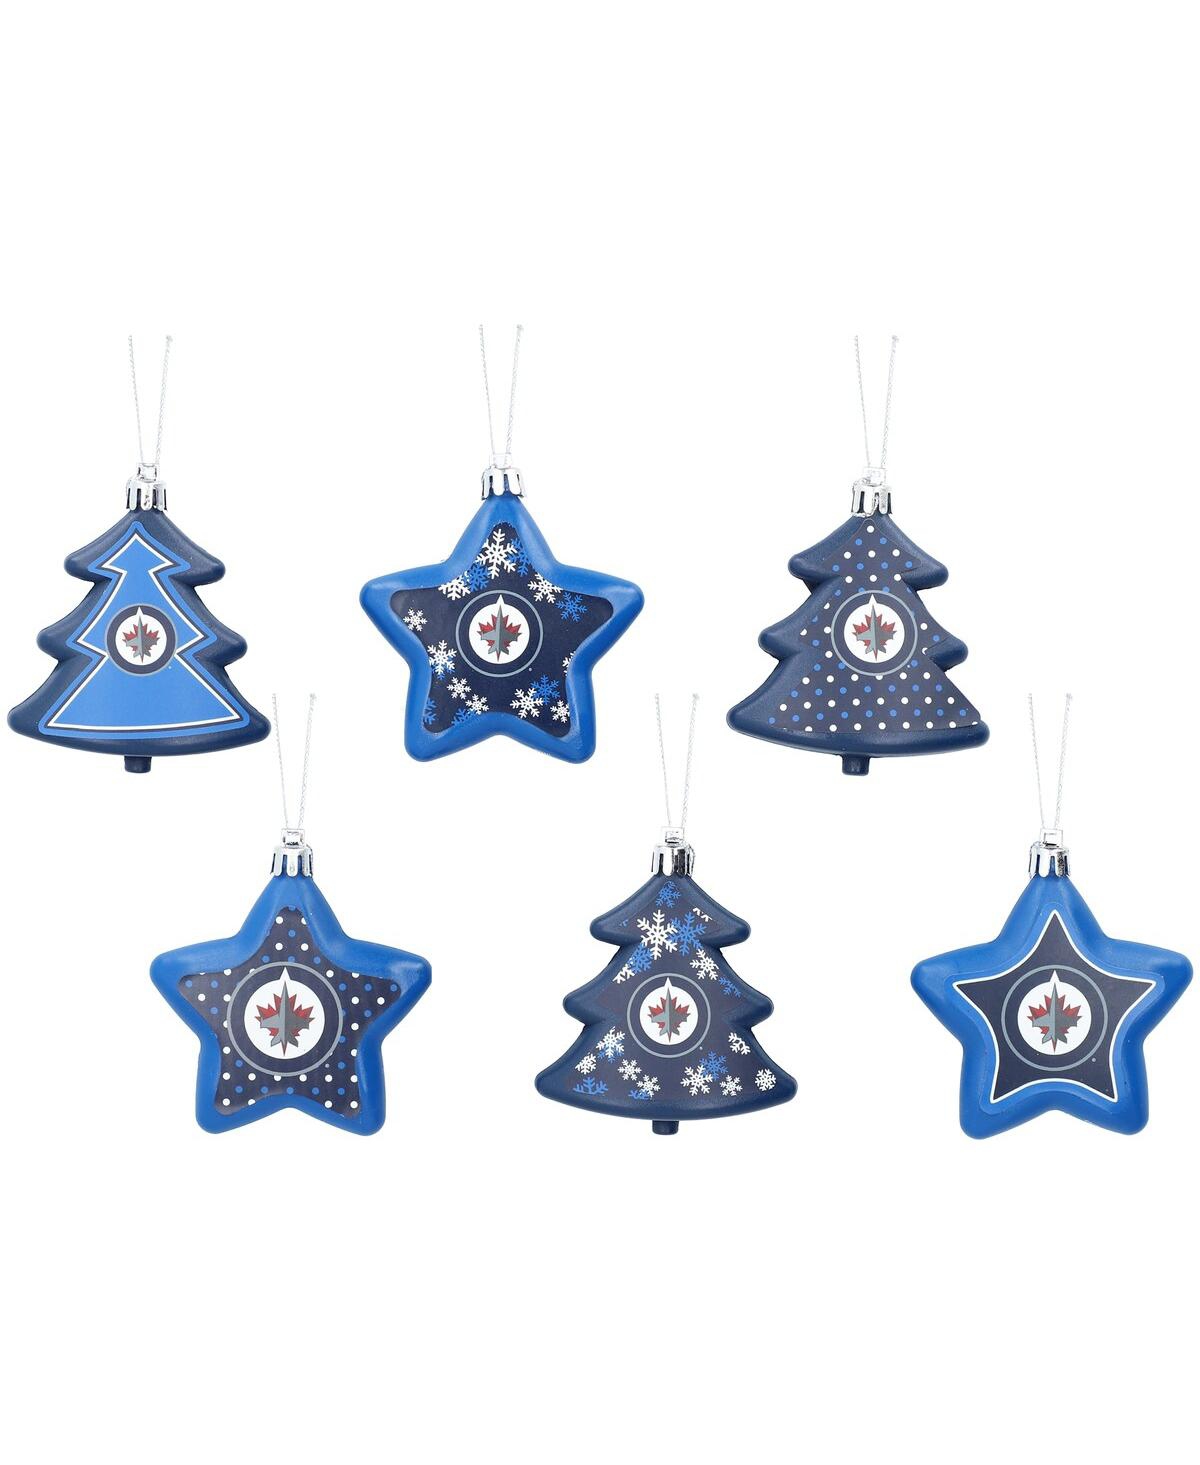 Foco Winnipeg Jets 3'' X 3'' Six-pack Shatterproof Tree And Star Ornament Set In Blue,black